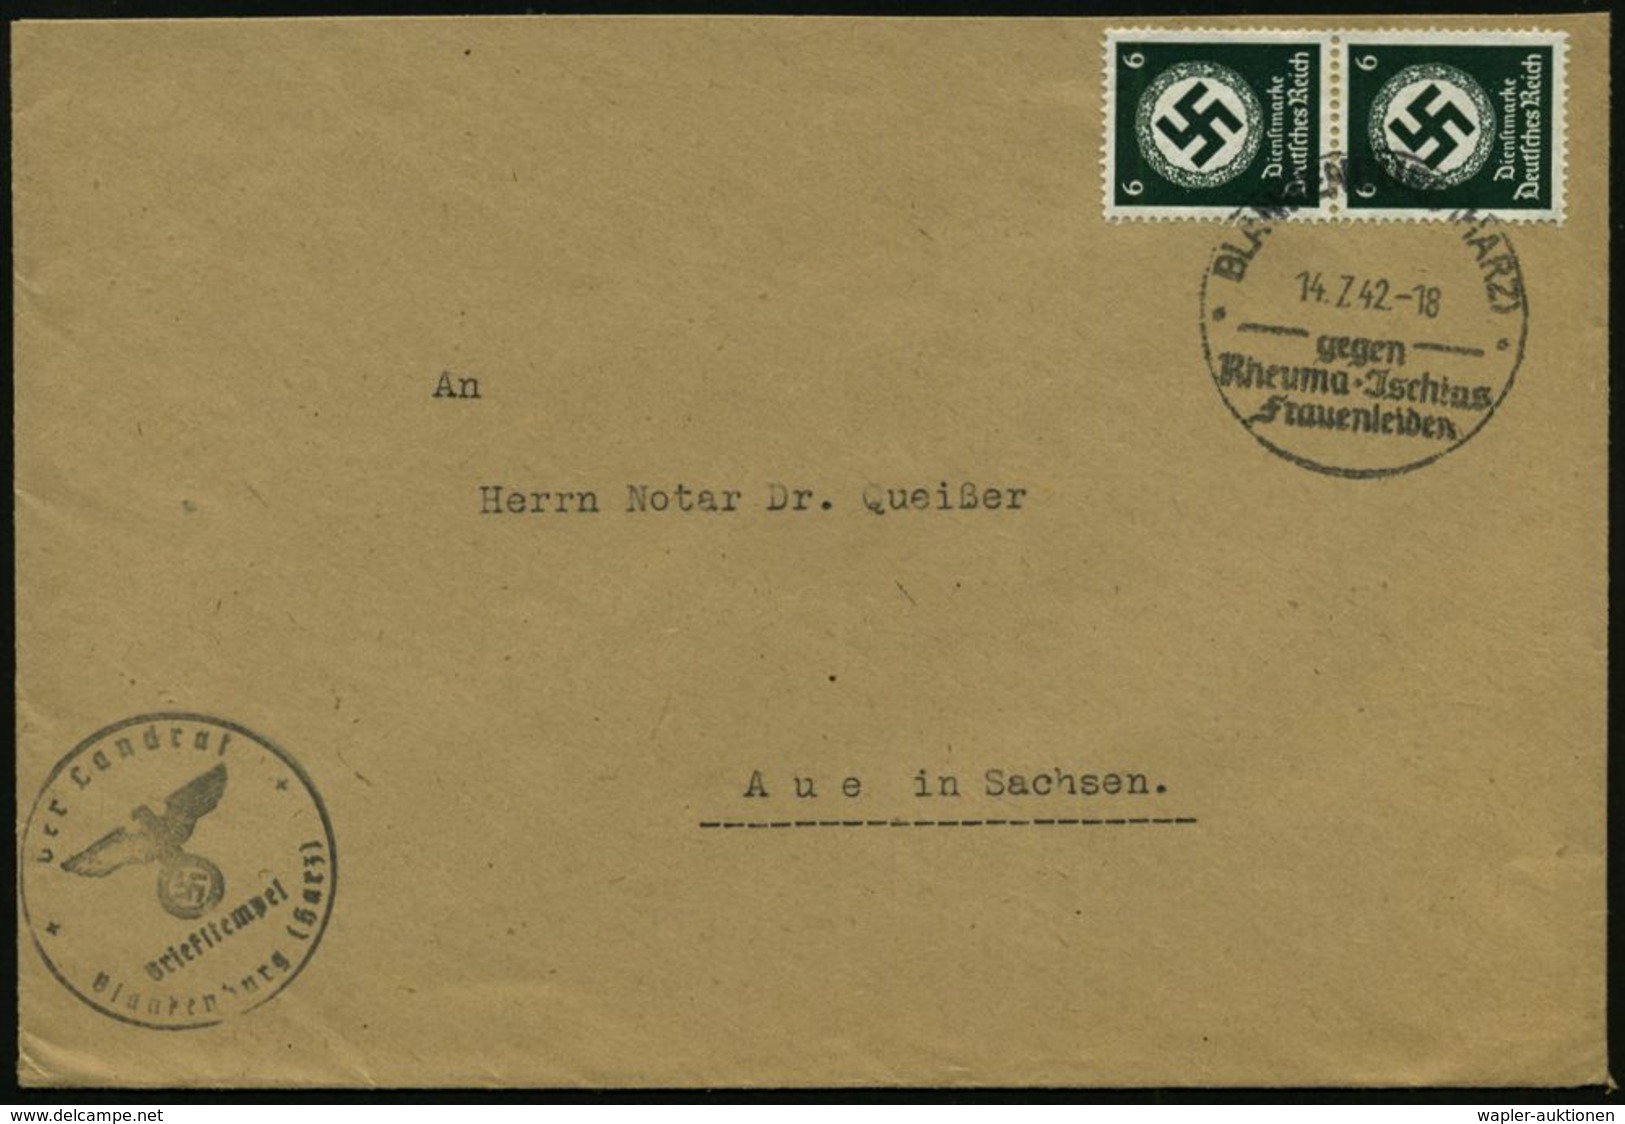 RHEUMATISMUS : BLANKENBURG (HARZ)/ Gegen/ Rheuma-Jschias/ Frauenleiden 1942 (14.7.) HWSt Auf Paar 6 Pf. Behördendienst + - Malattie